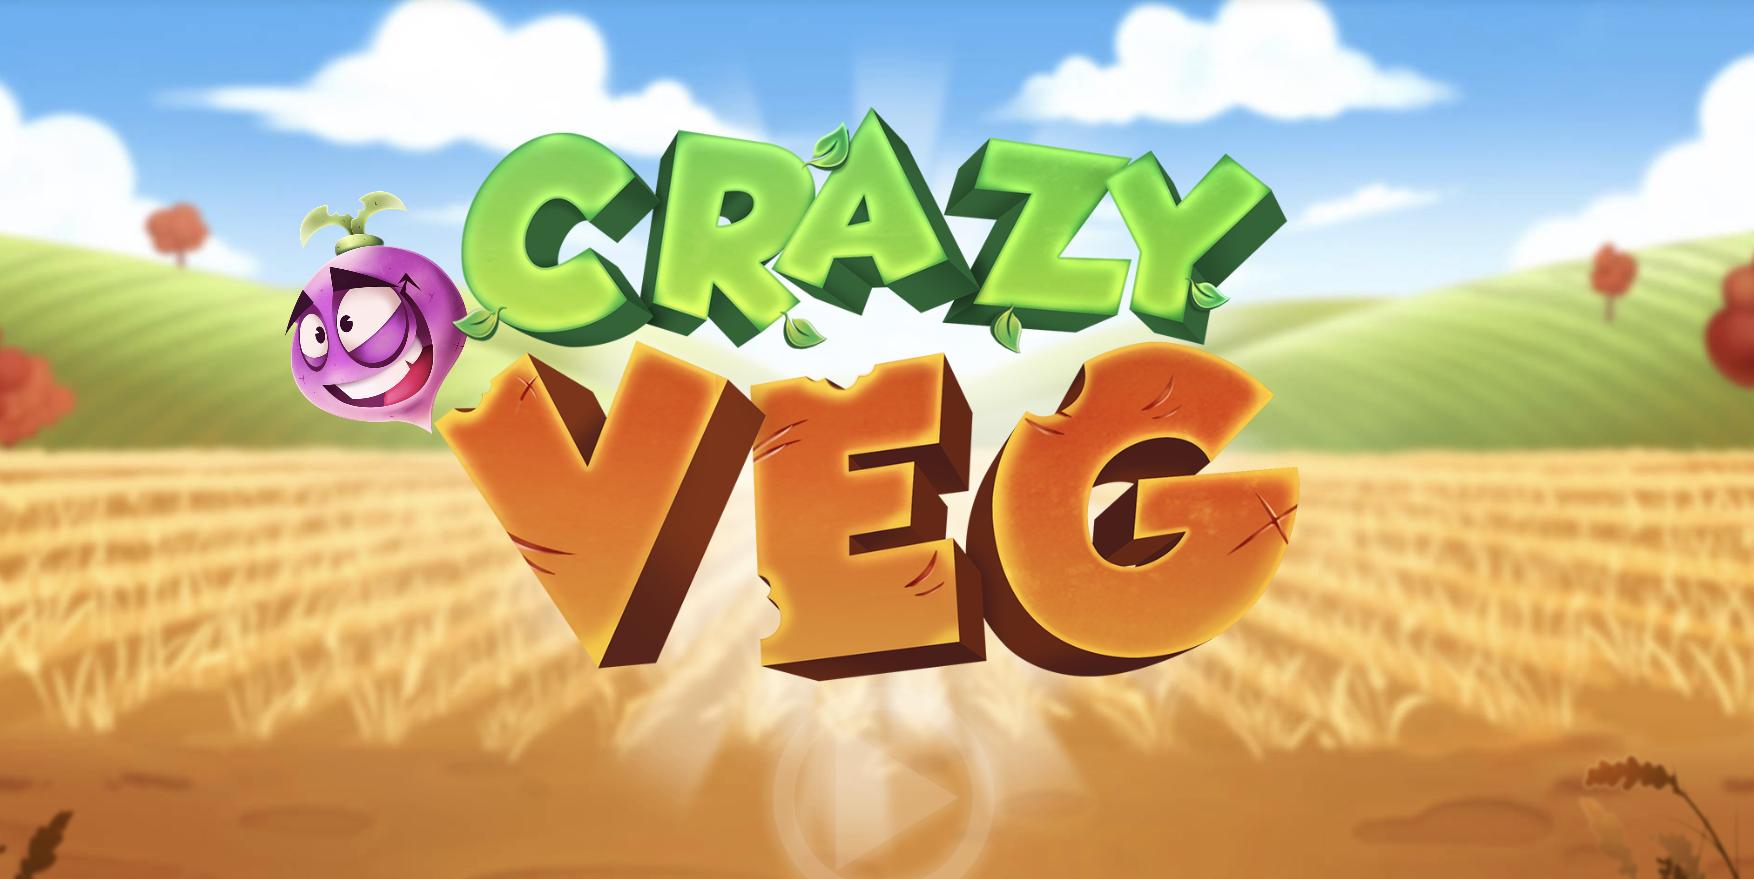 crazy veg banner